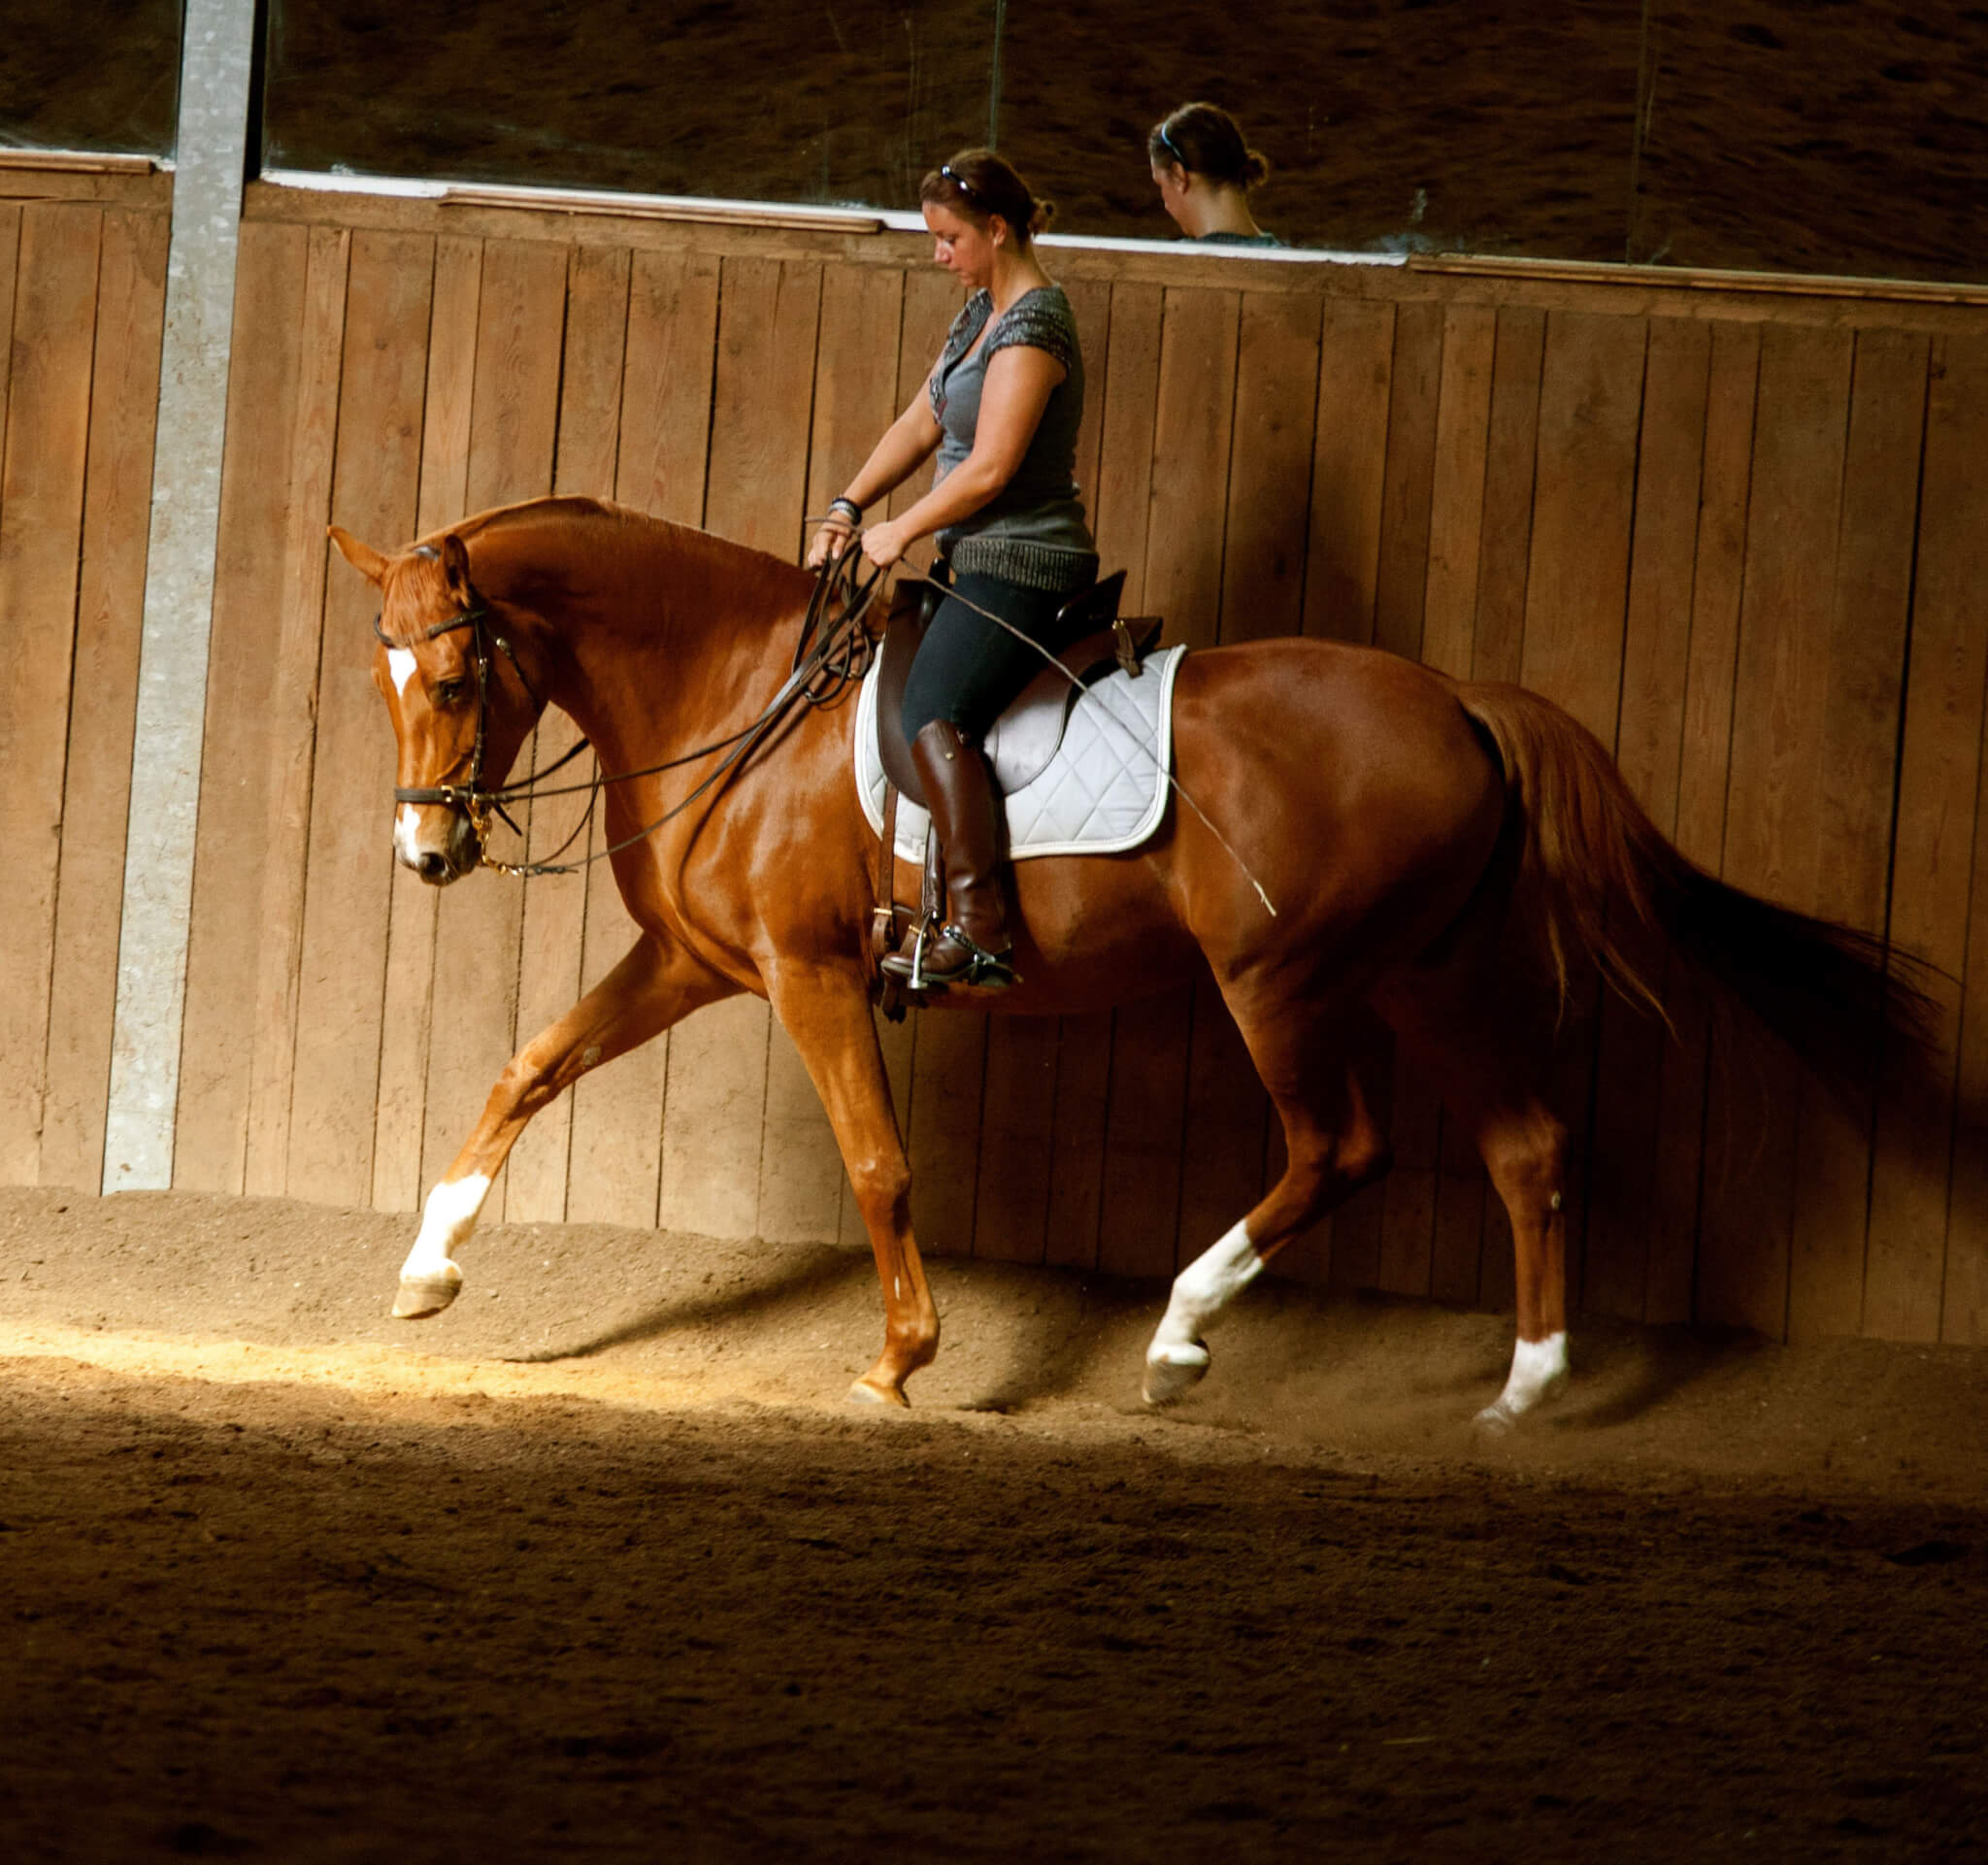 Schubkraft versus Tragkraft  – oder: Reite dein Pferd vorwärts und richte es gerade!